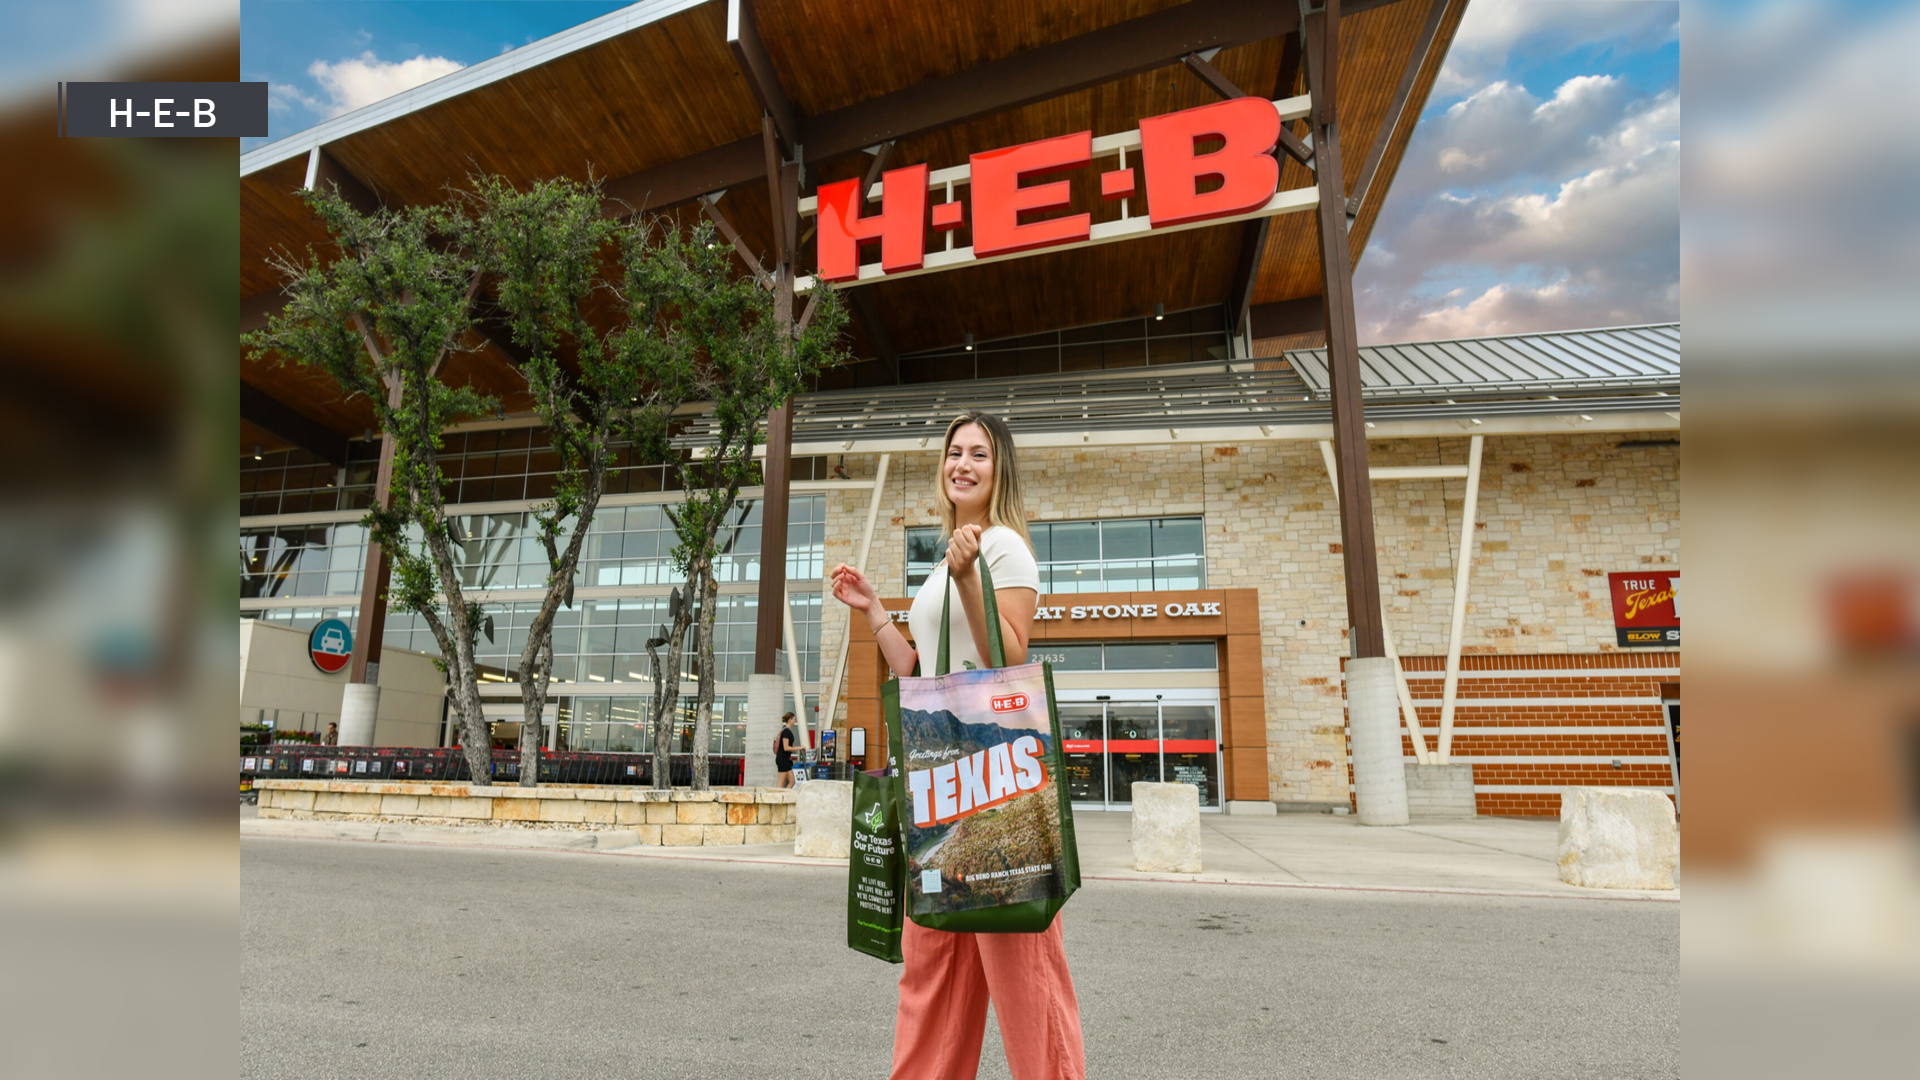 h-e-b regalará bolsas reutilizables en texas en honor del día de la tierra: cómo conseguir una